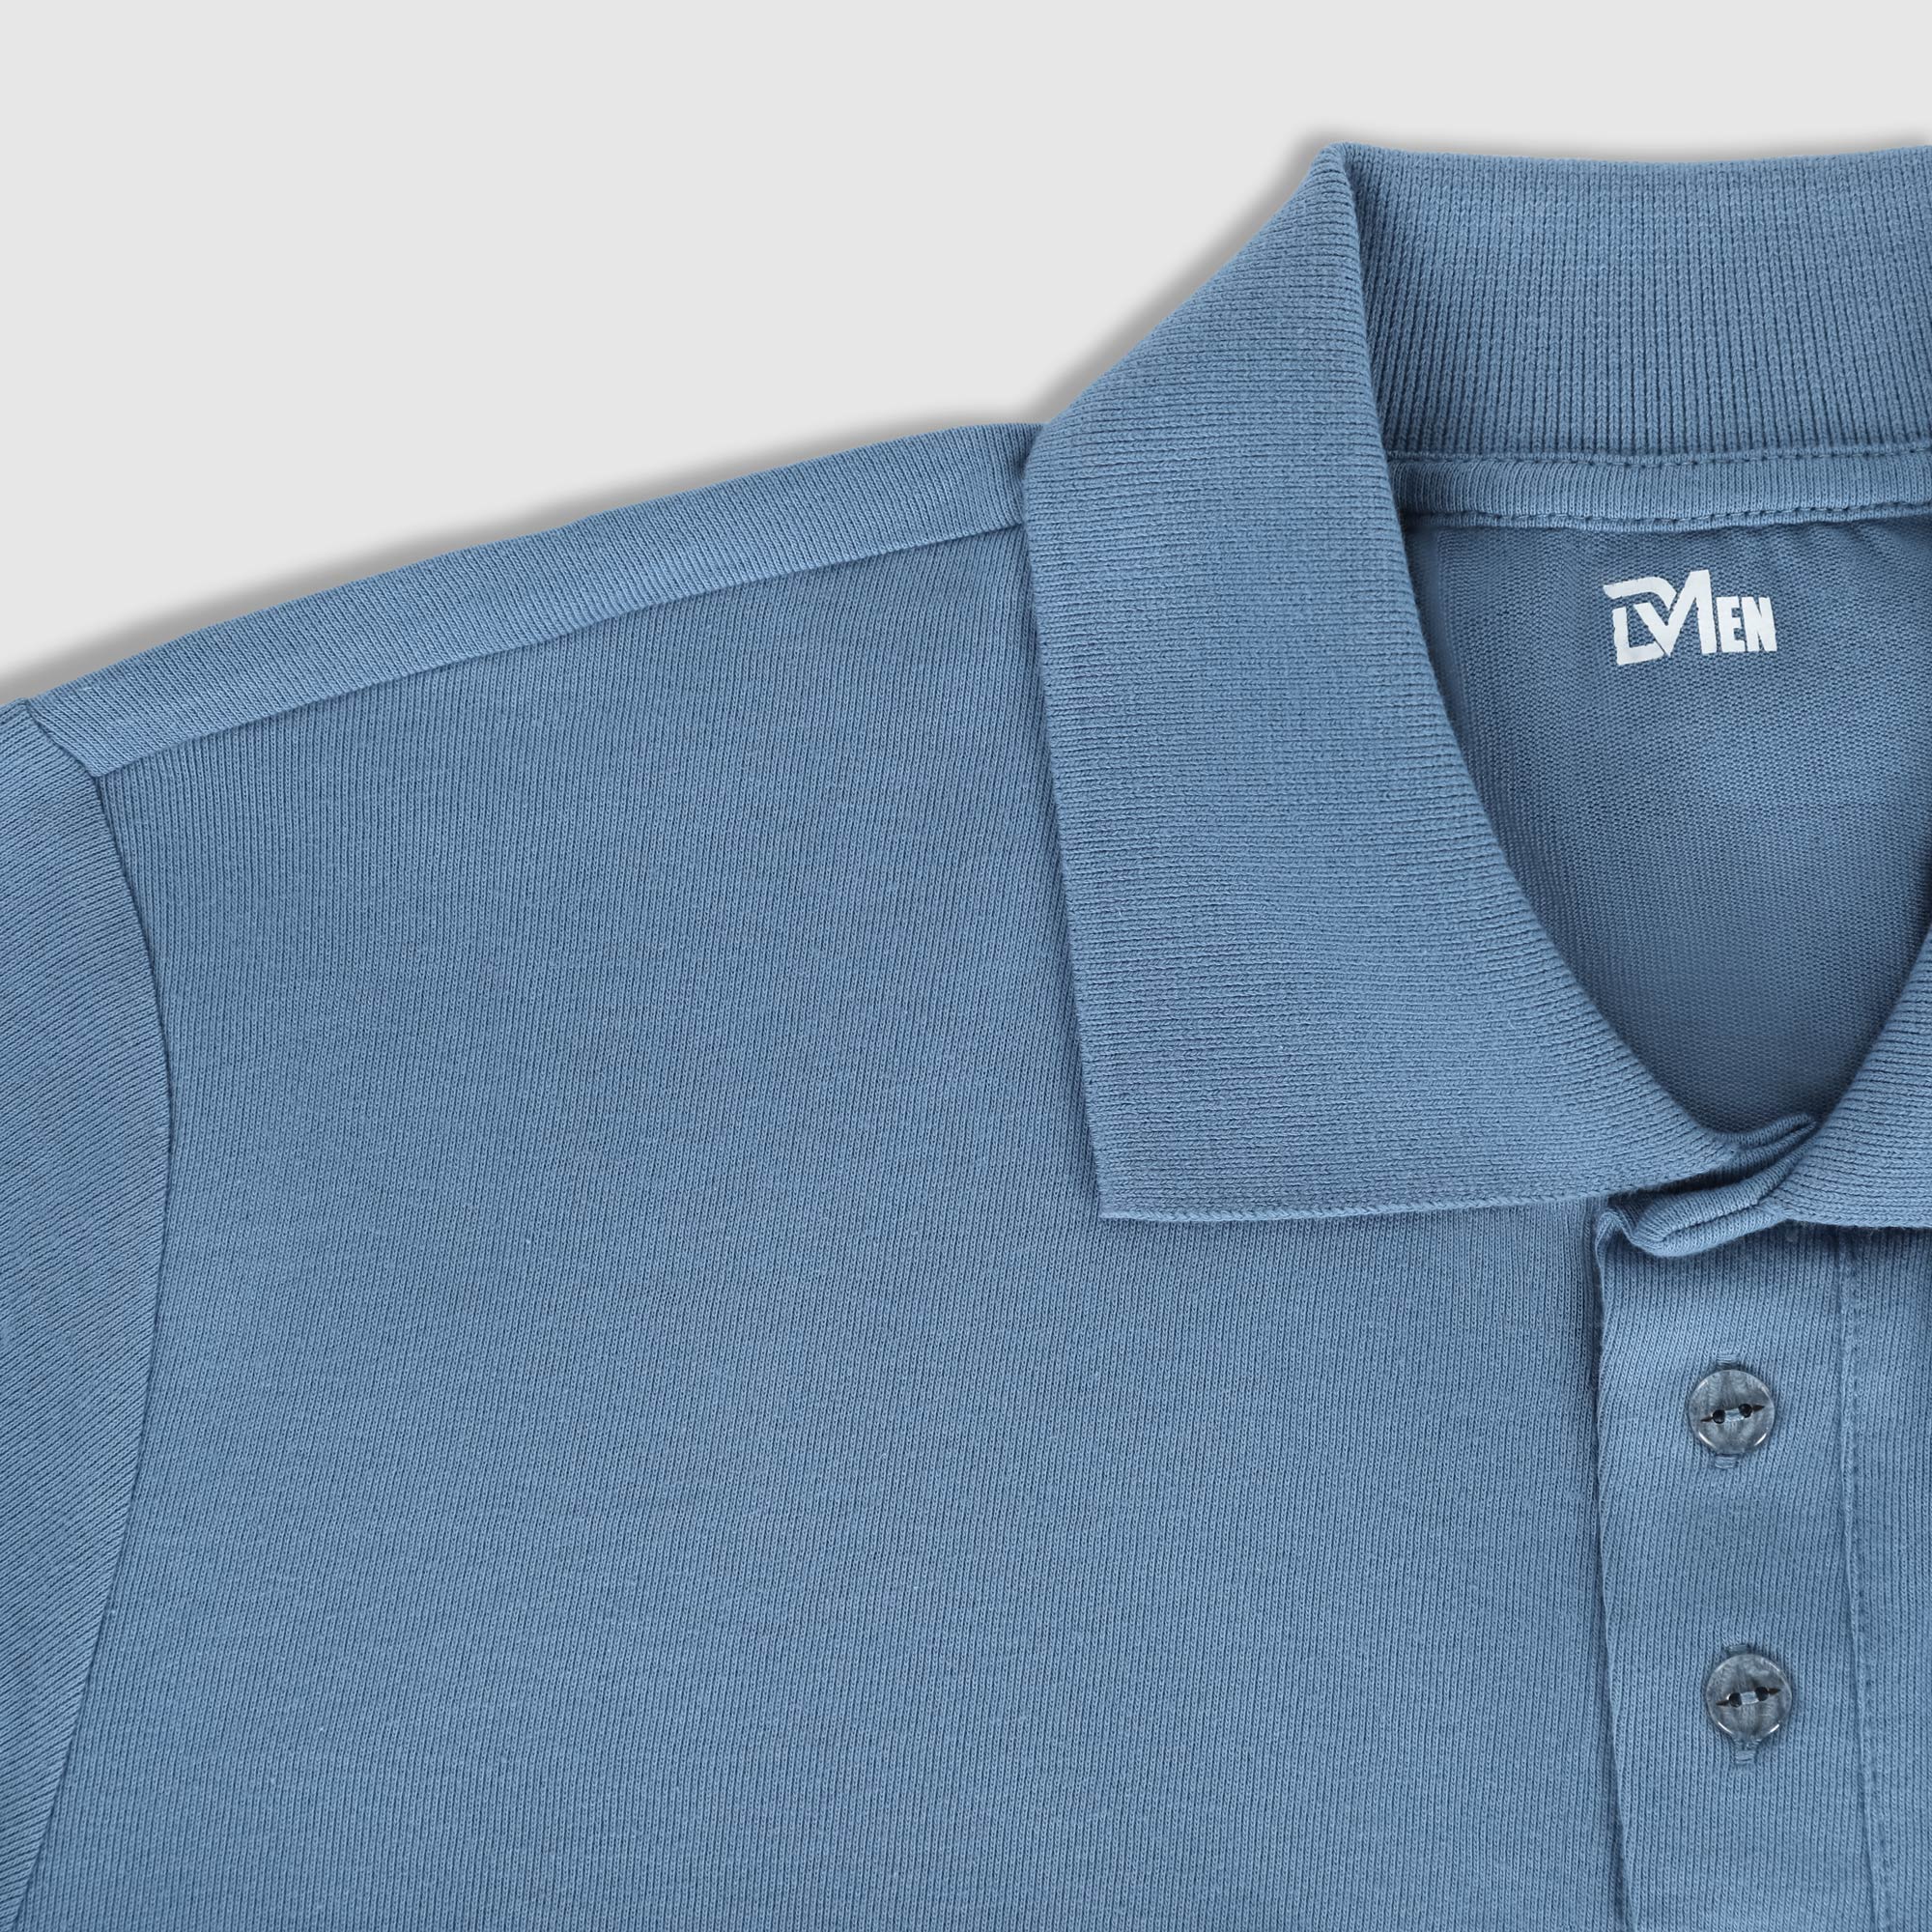 Рубашка мужская Diva Teks поло голубая, цвет голубой, размер XL - фото 3